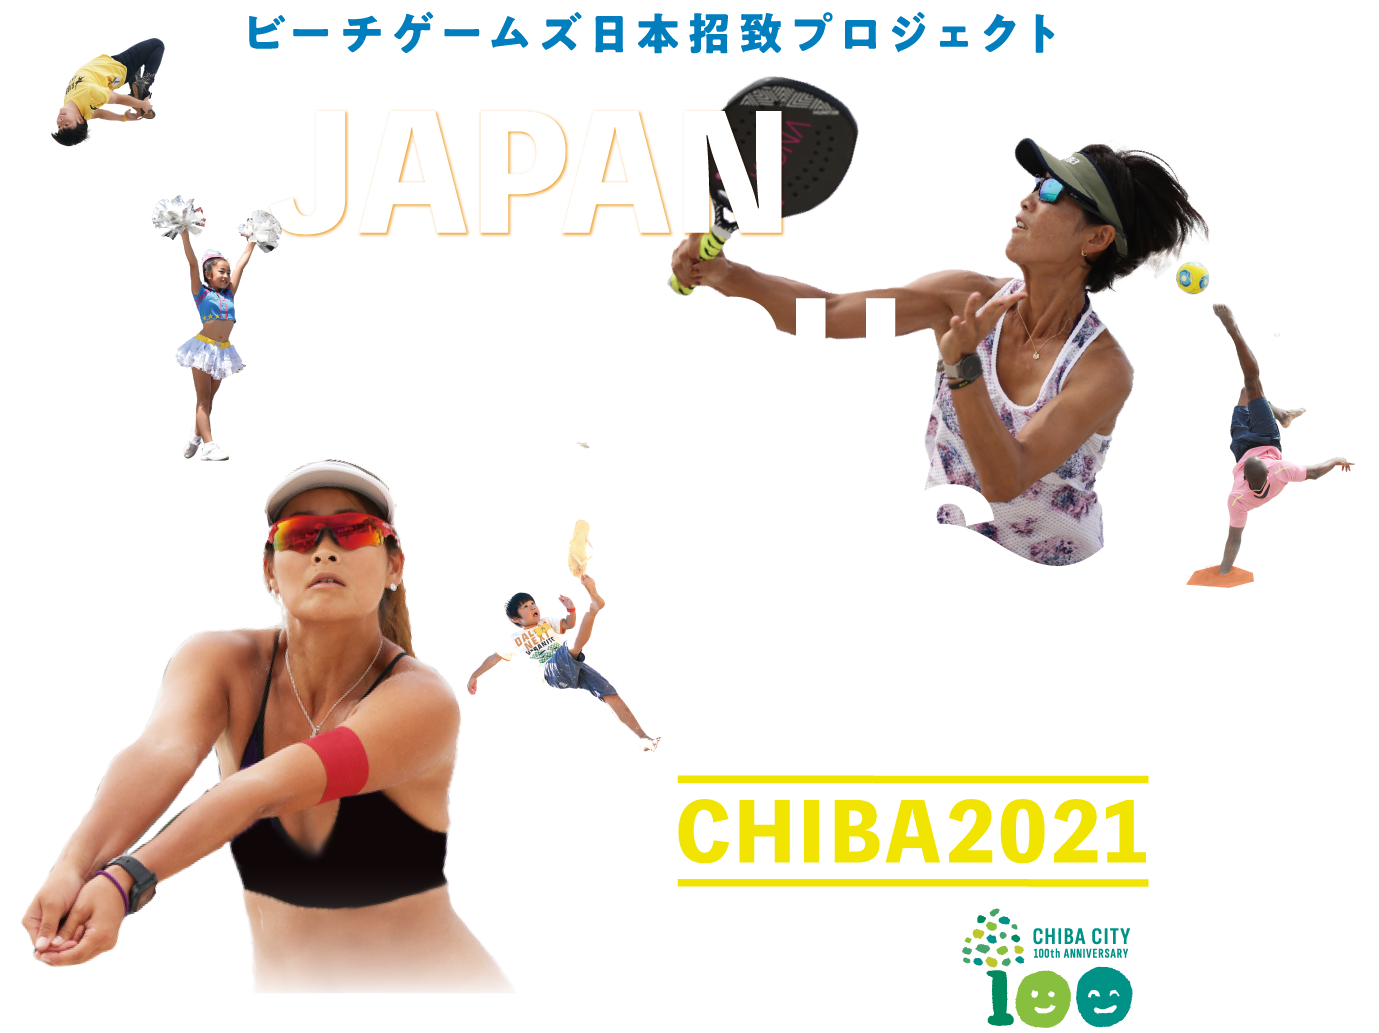 JAPAN BEACH GAMES FESTIVAL